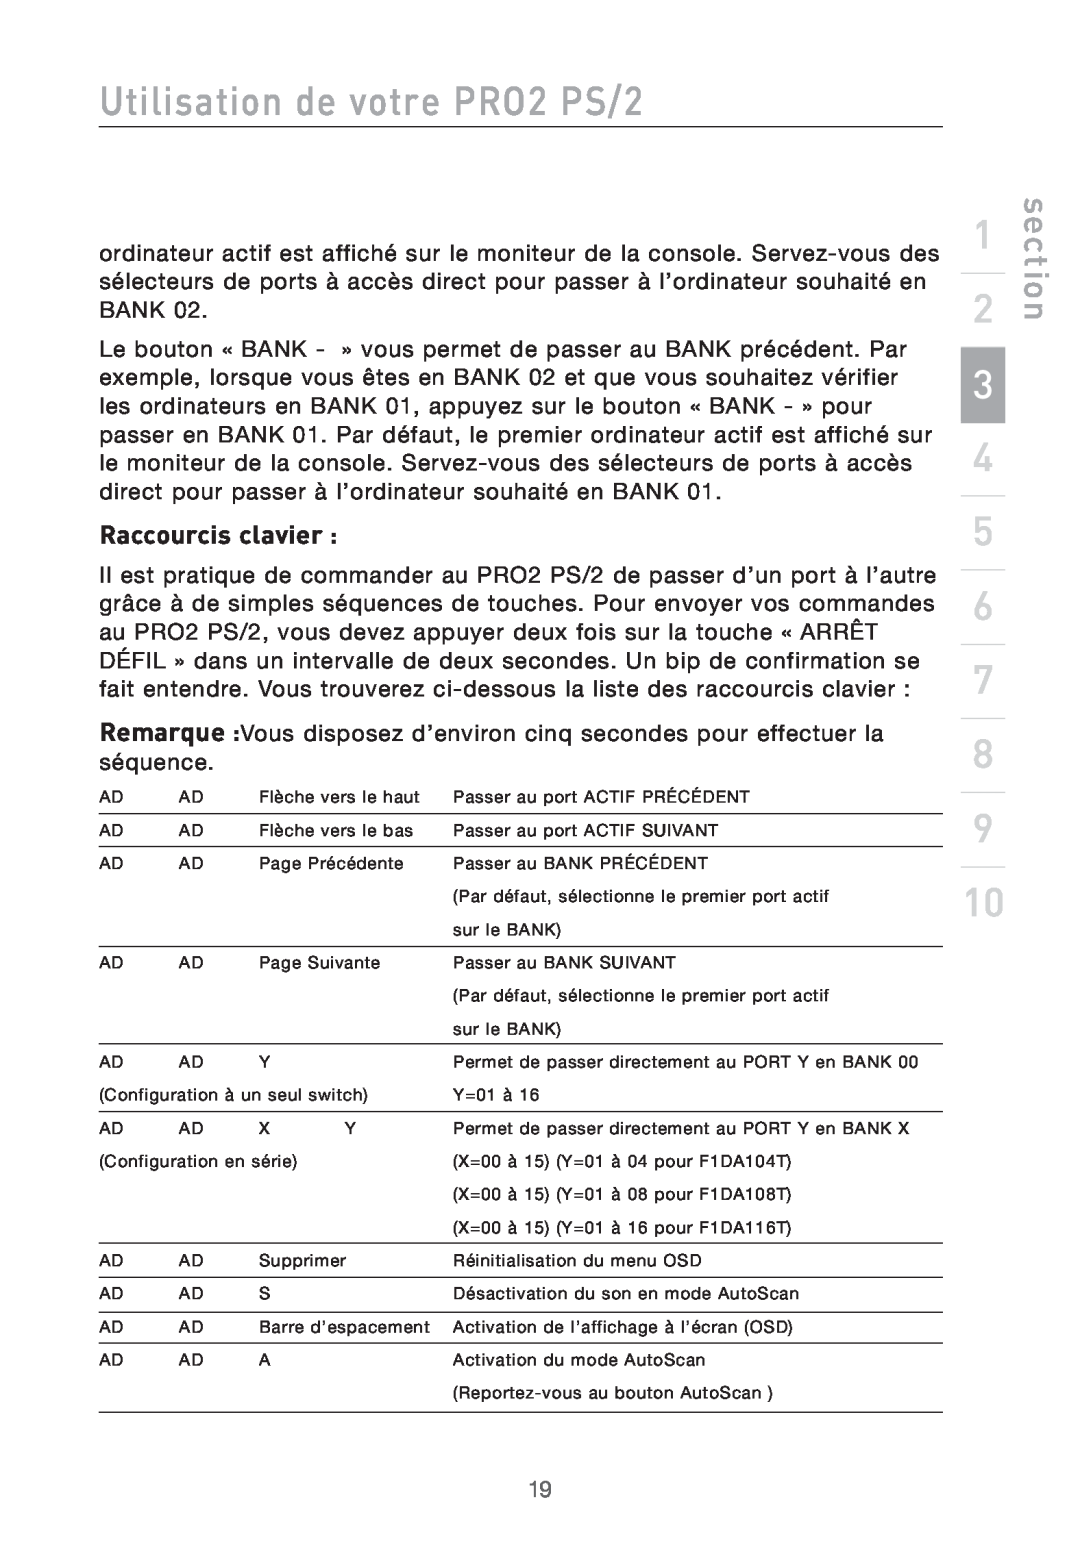 Belkin user manual Raccourcis clavier, Utilisation de votre PRO2 PS/2, section 